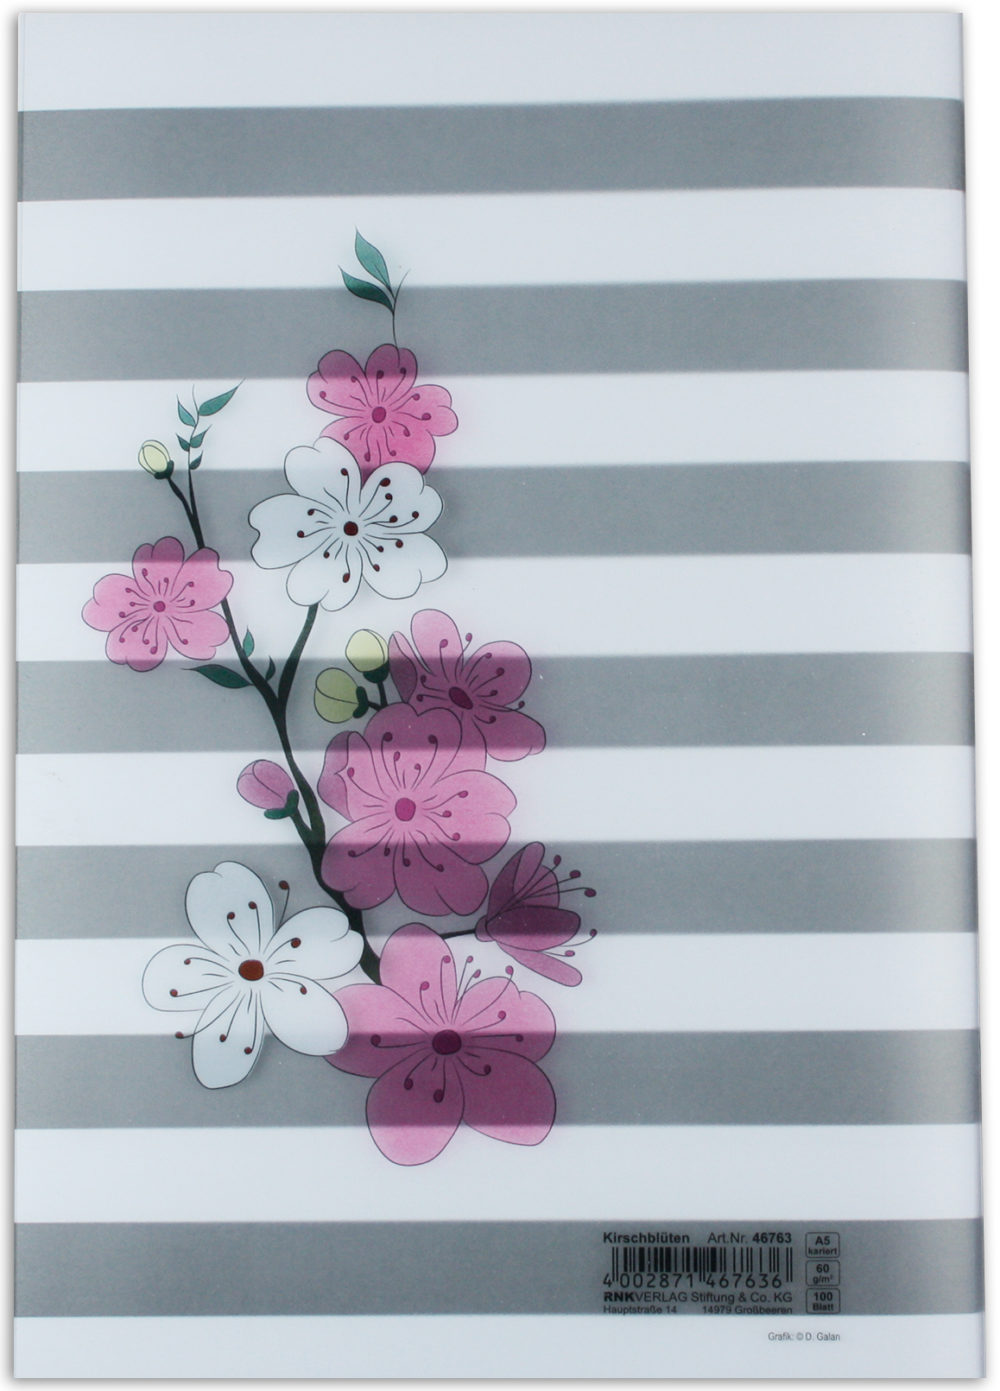 Heft "Kirschblüten" im PP Umschlag Rückseite gestreift mit Kirschblüten